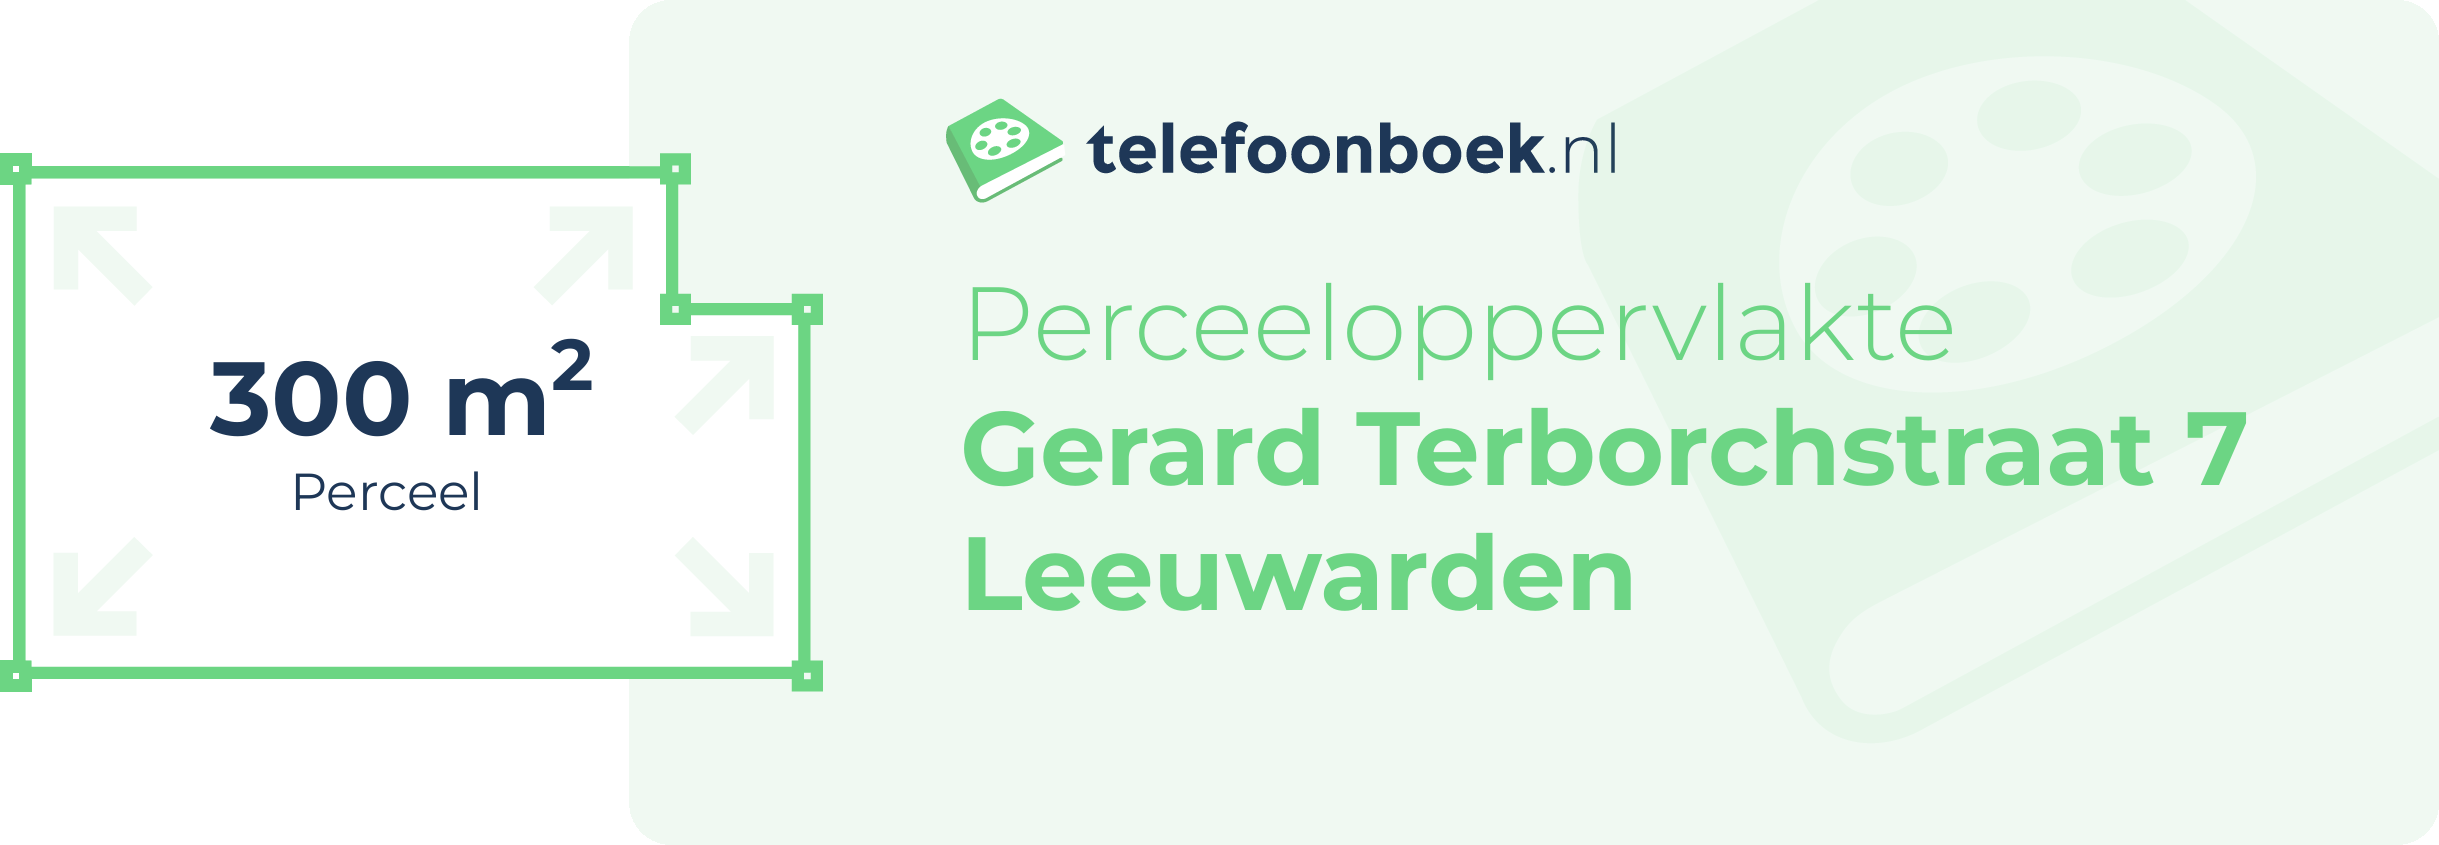 Perceeloppervlakte Gerard Terborchstraat 7 Leeuwarden